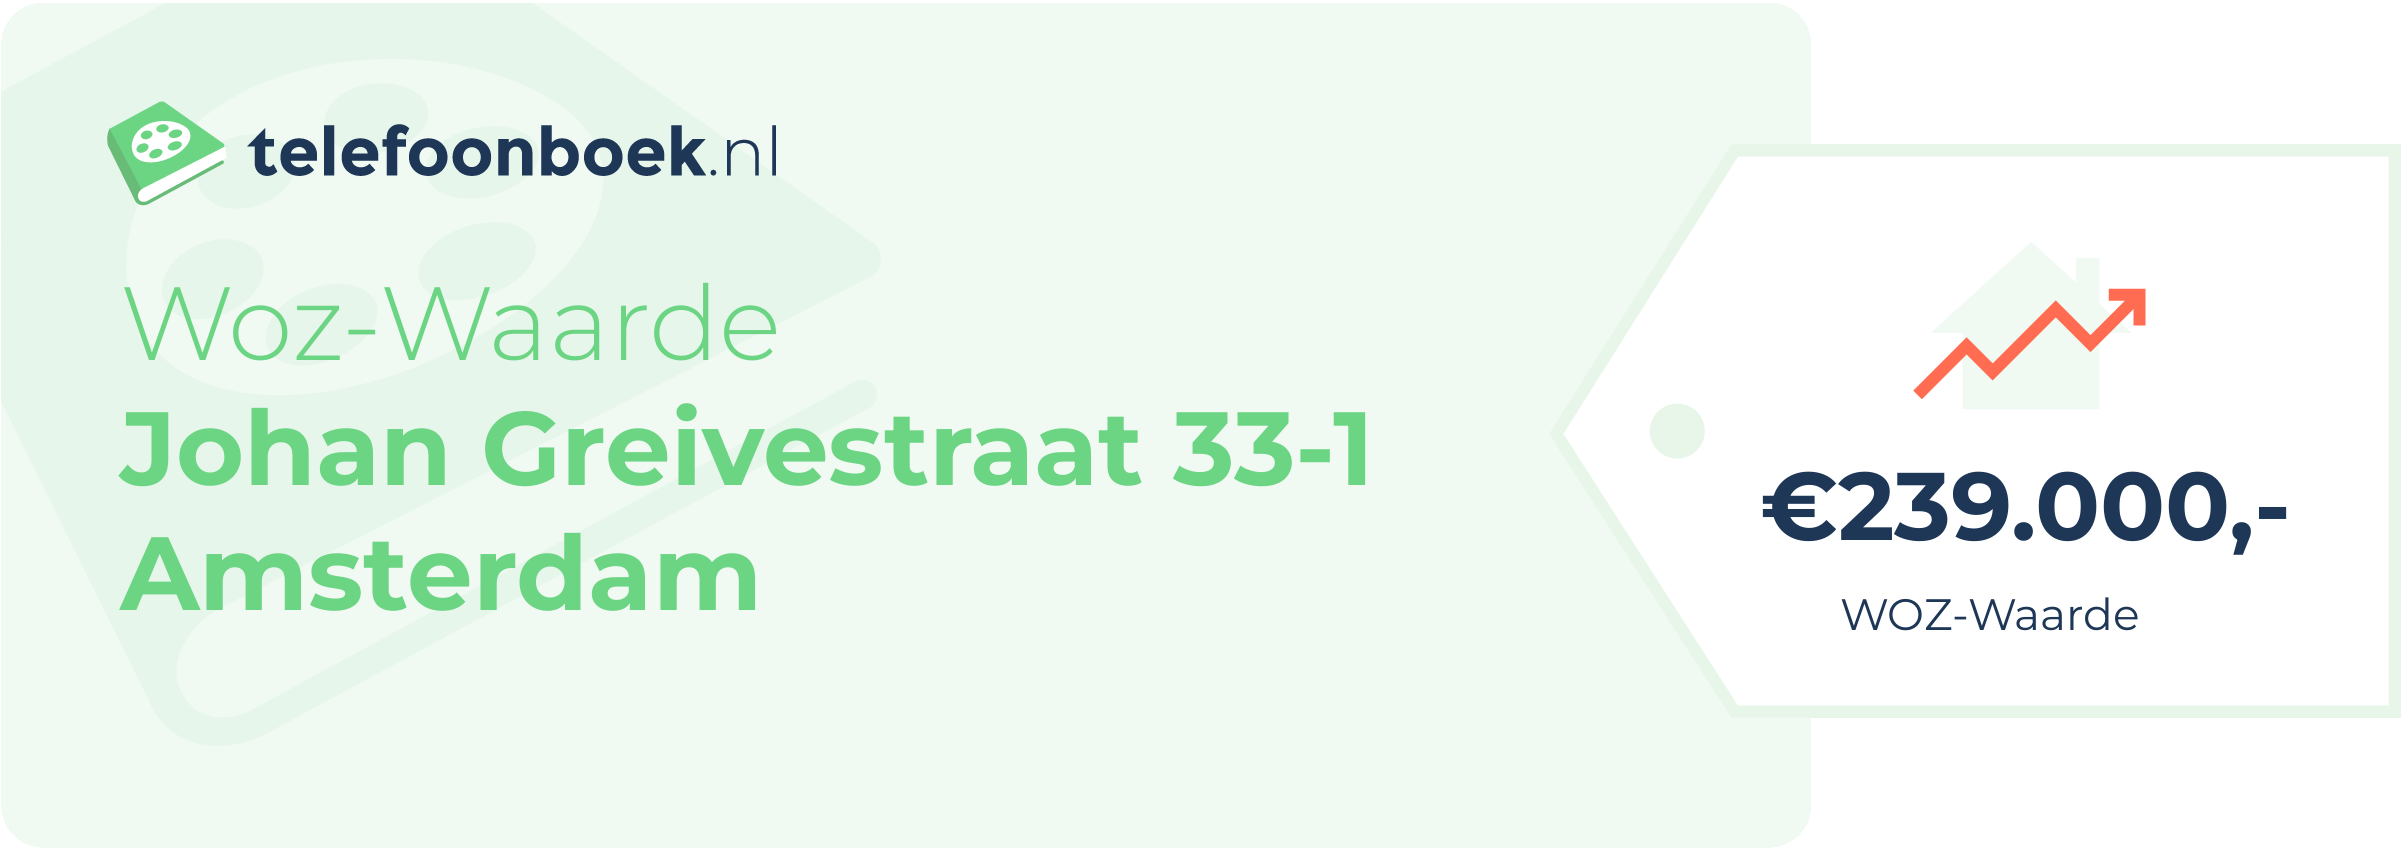 WOZ-waarde Johan Greivestraat 33-1 Amsterdam